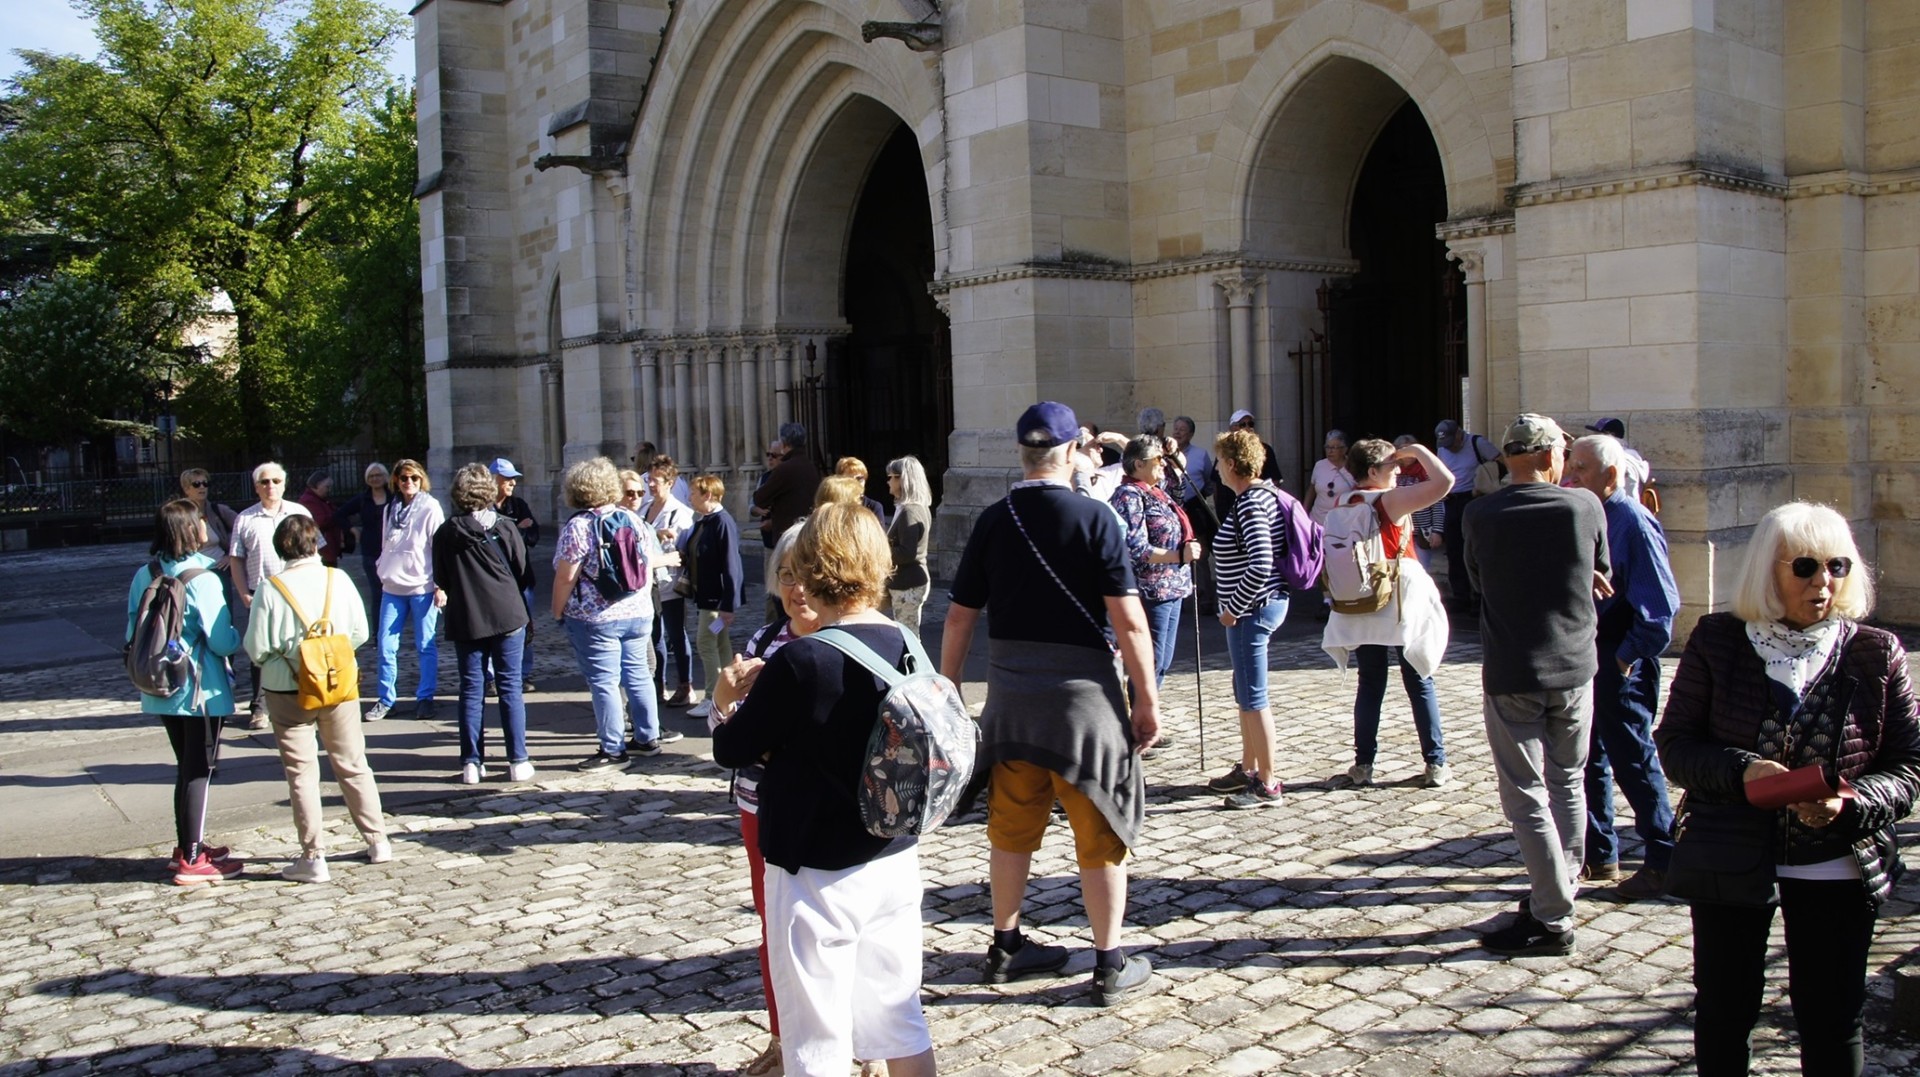 Le groupe de marcheurs devant la cathédrale de Moulins